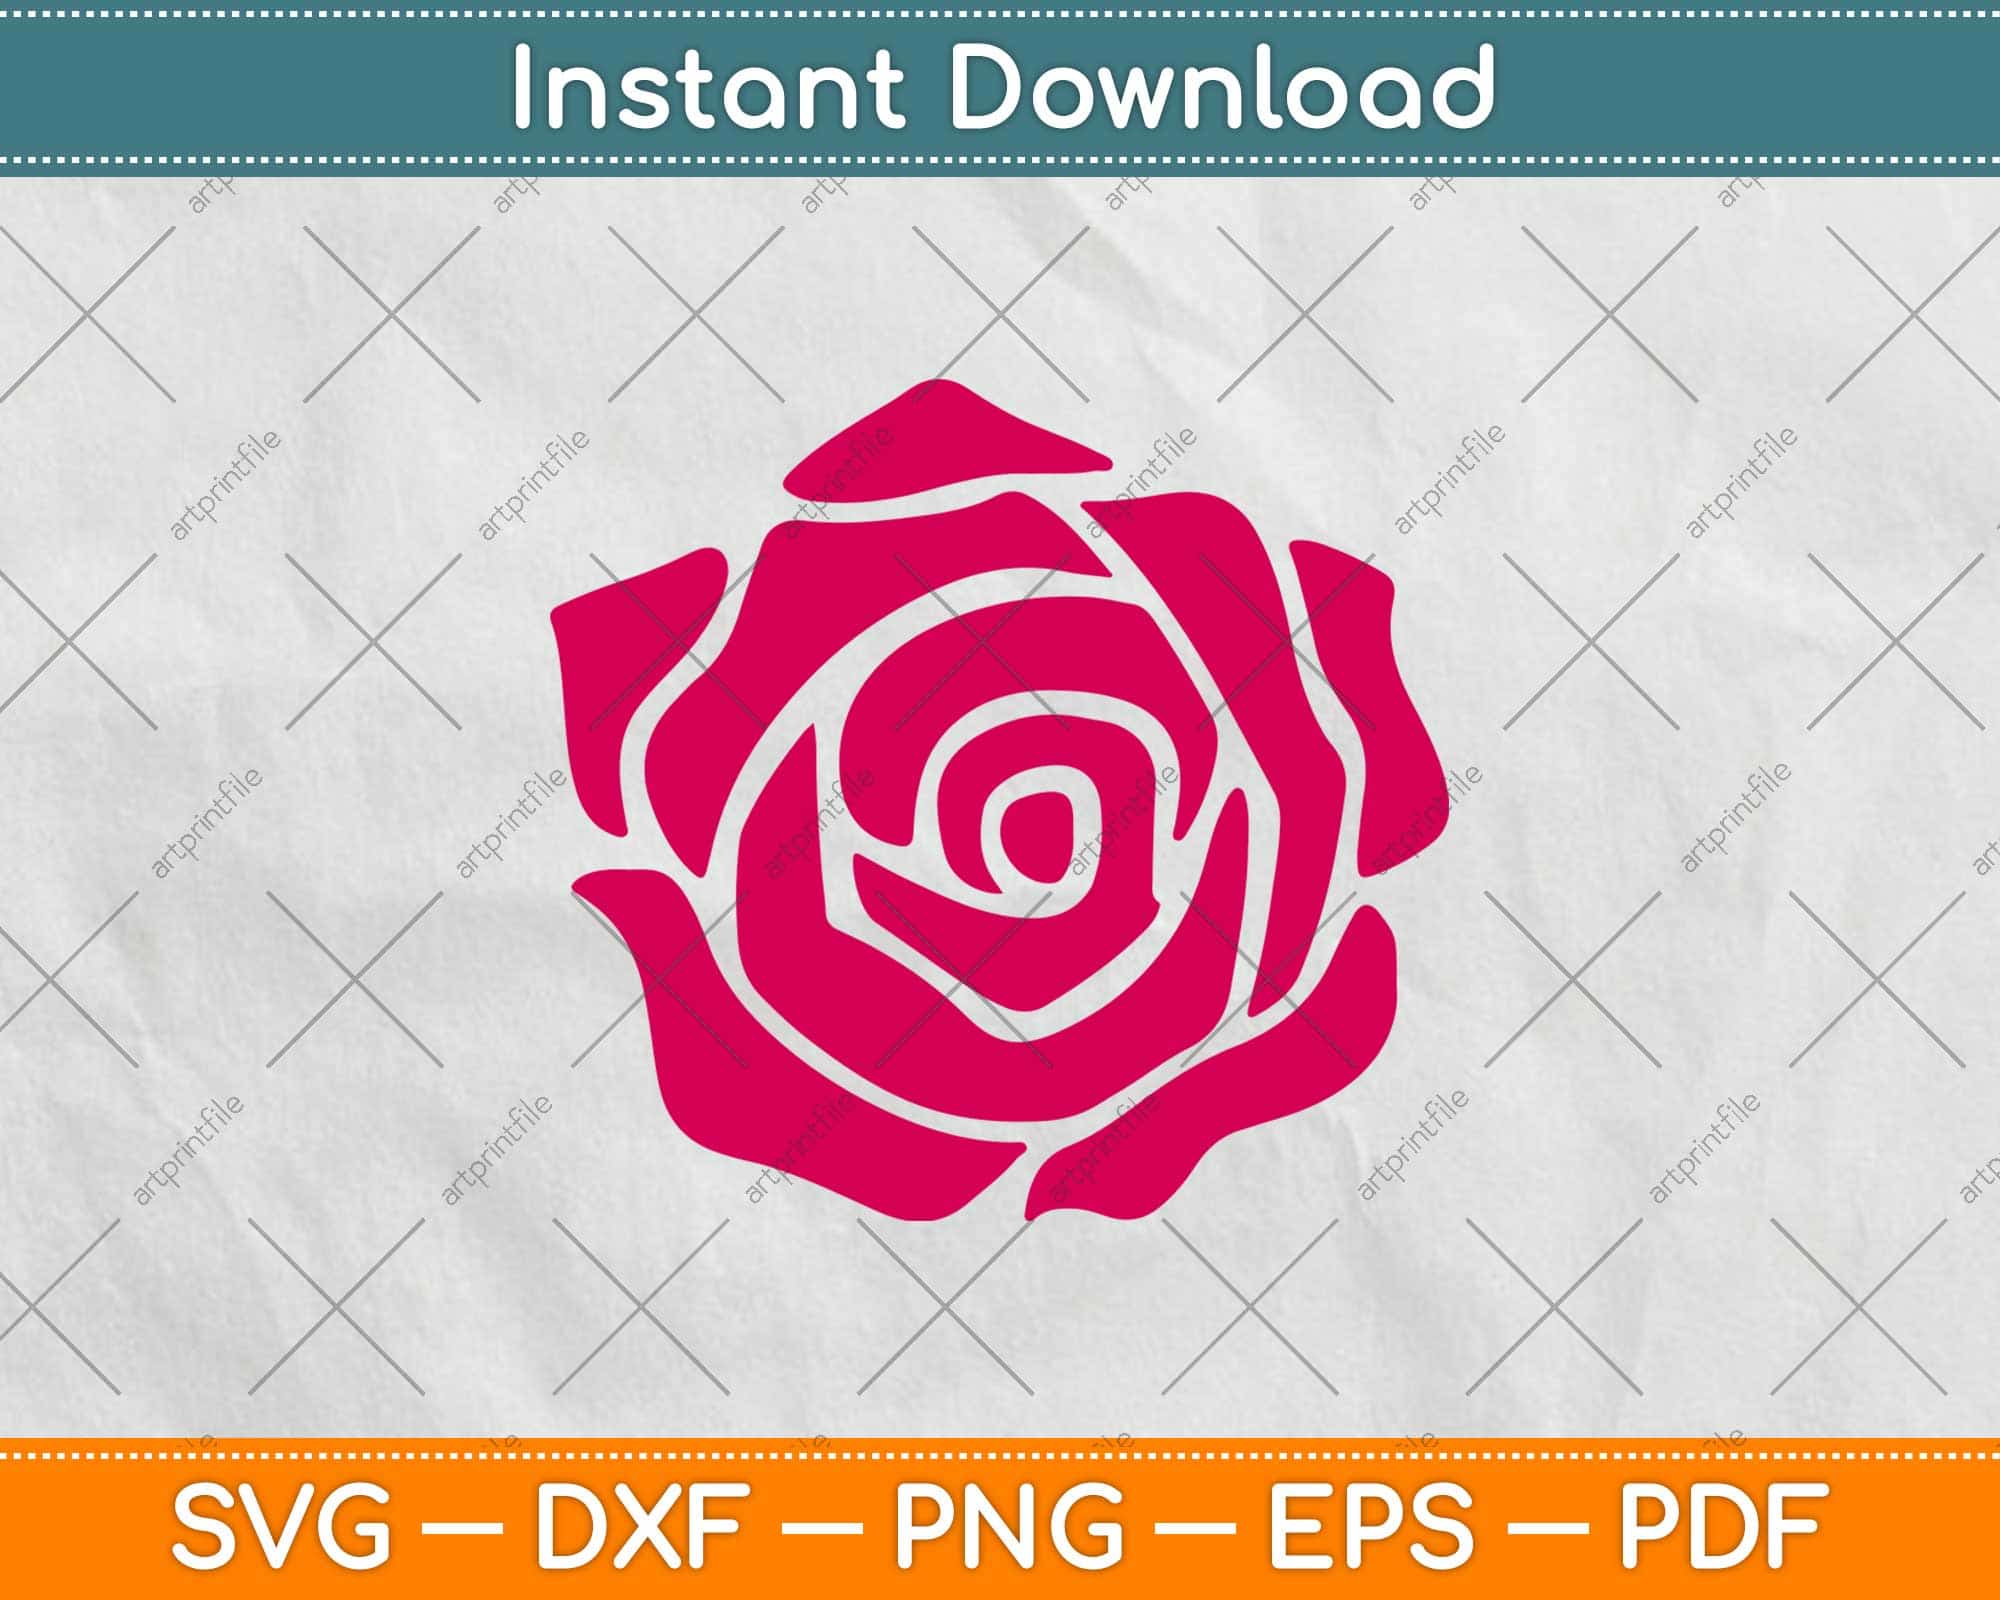 Rose Flower SVG Vector, Rose SVG For Cricut Instant Download